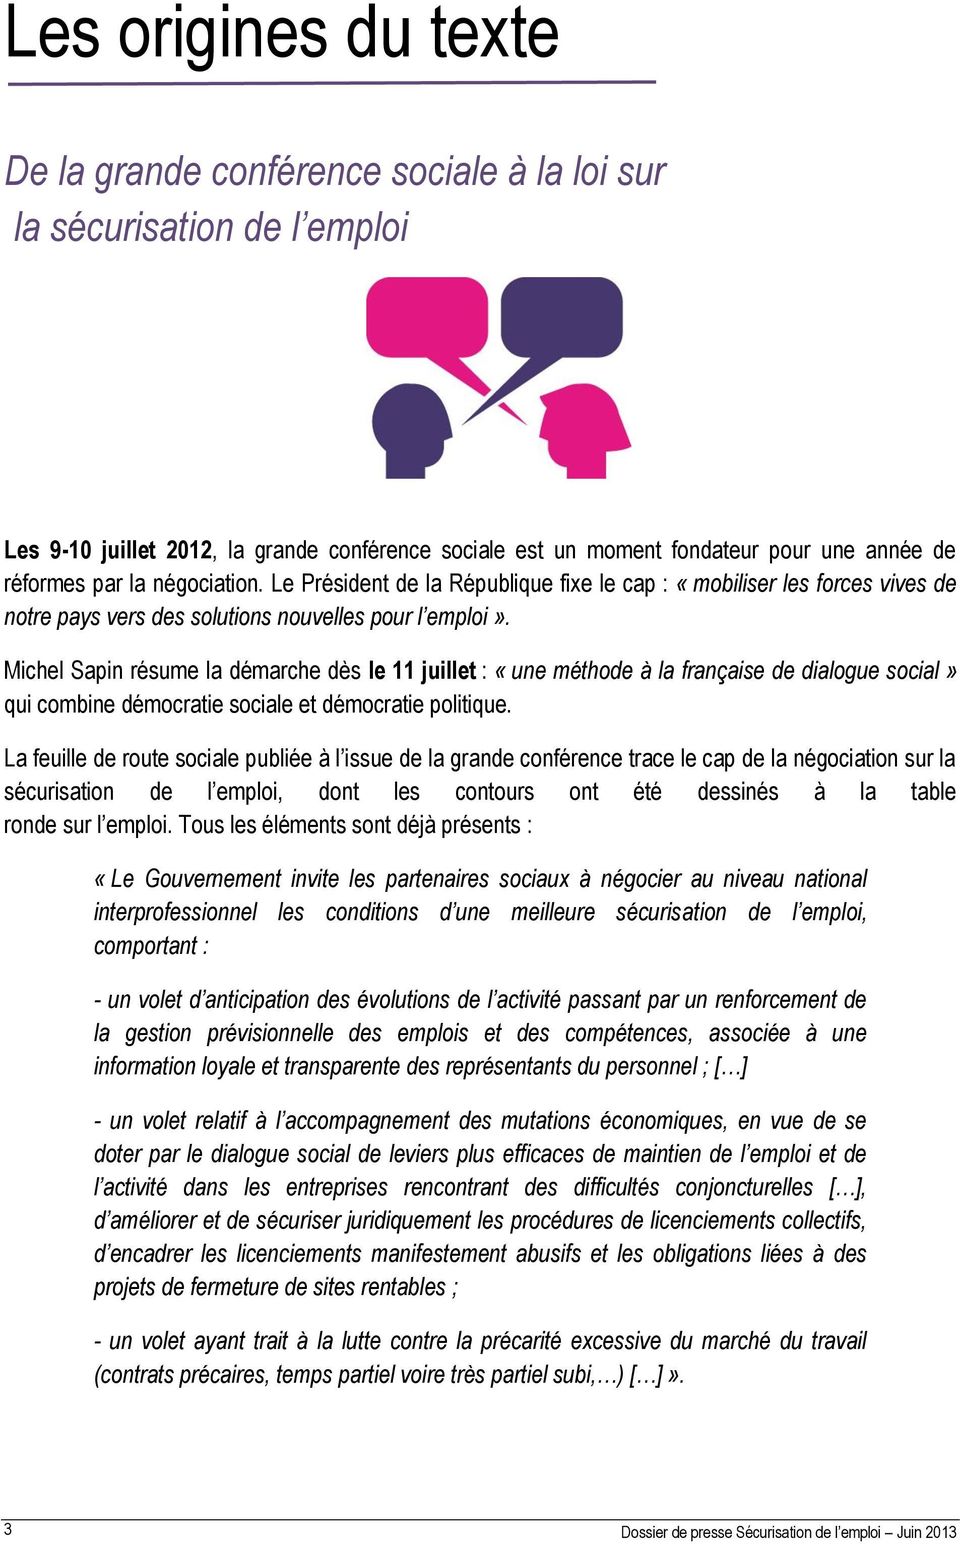 Michel Sapin résume la démarche dès le 11 juillet : «une méthode à la française de dialogue social» qui combine démocratie sociale et démocratie politique.